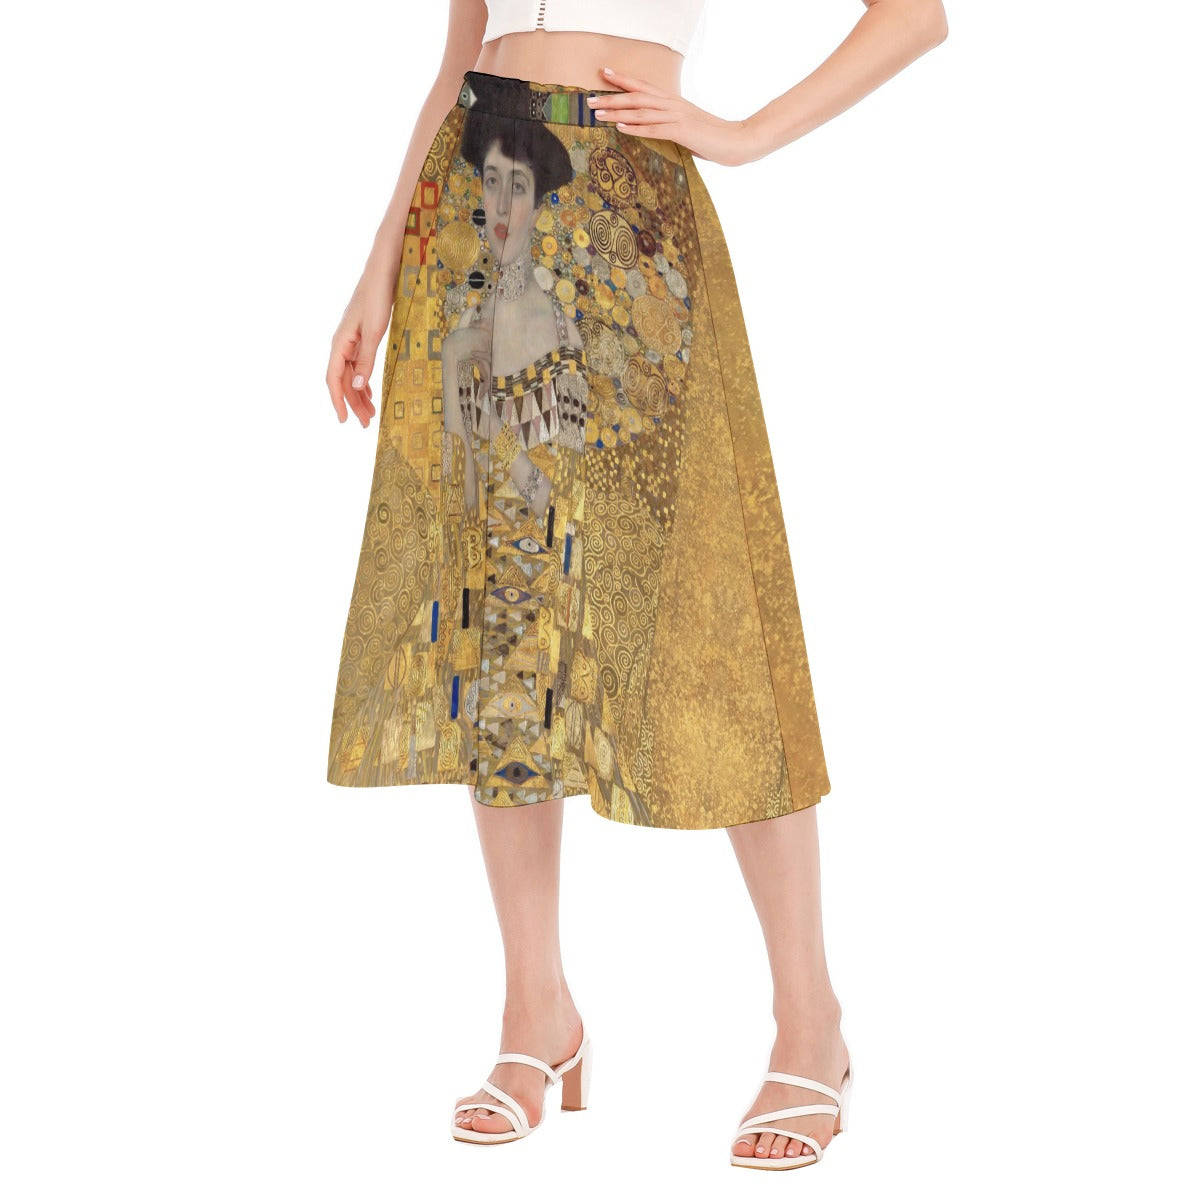 Ethereal Long Skirt by Gustav Klimt